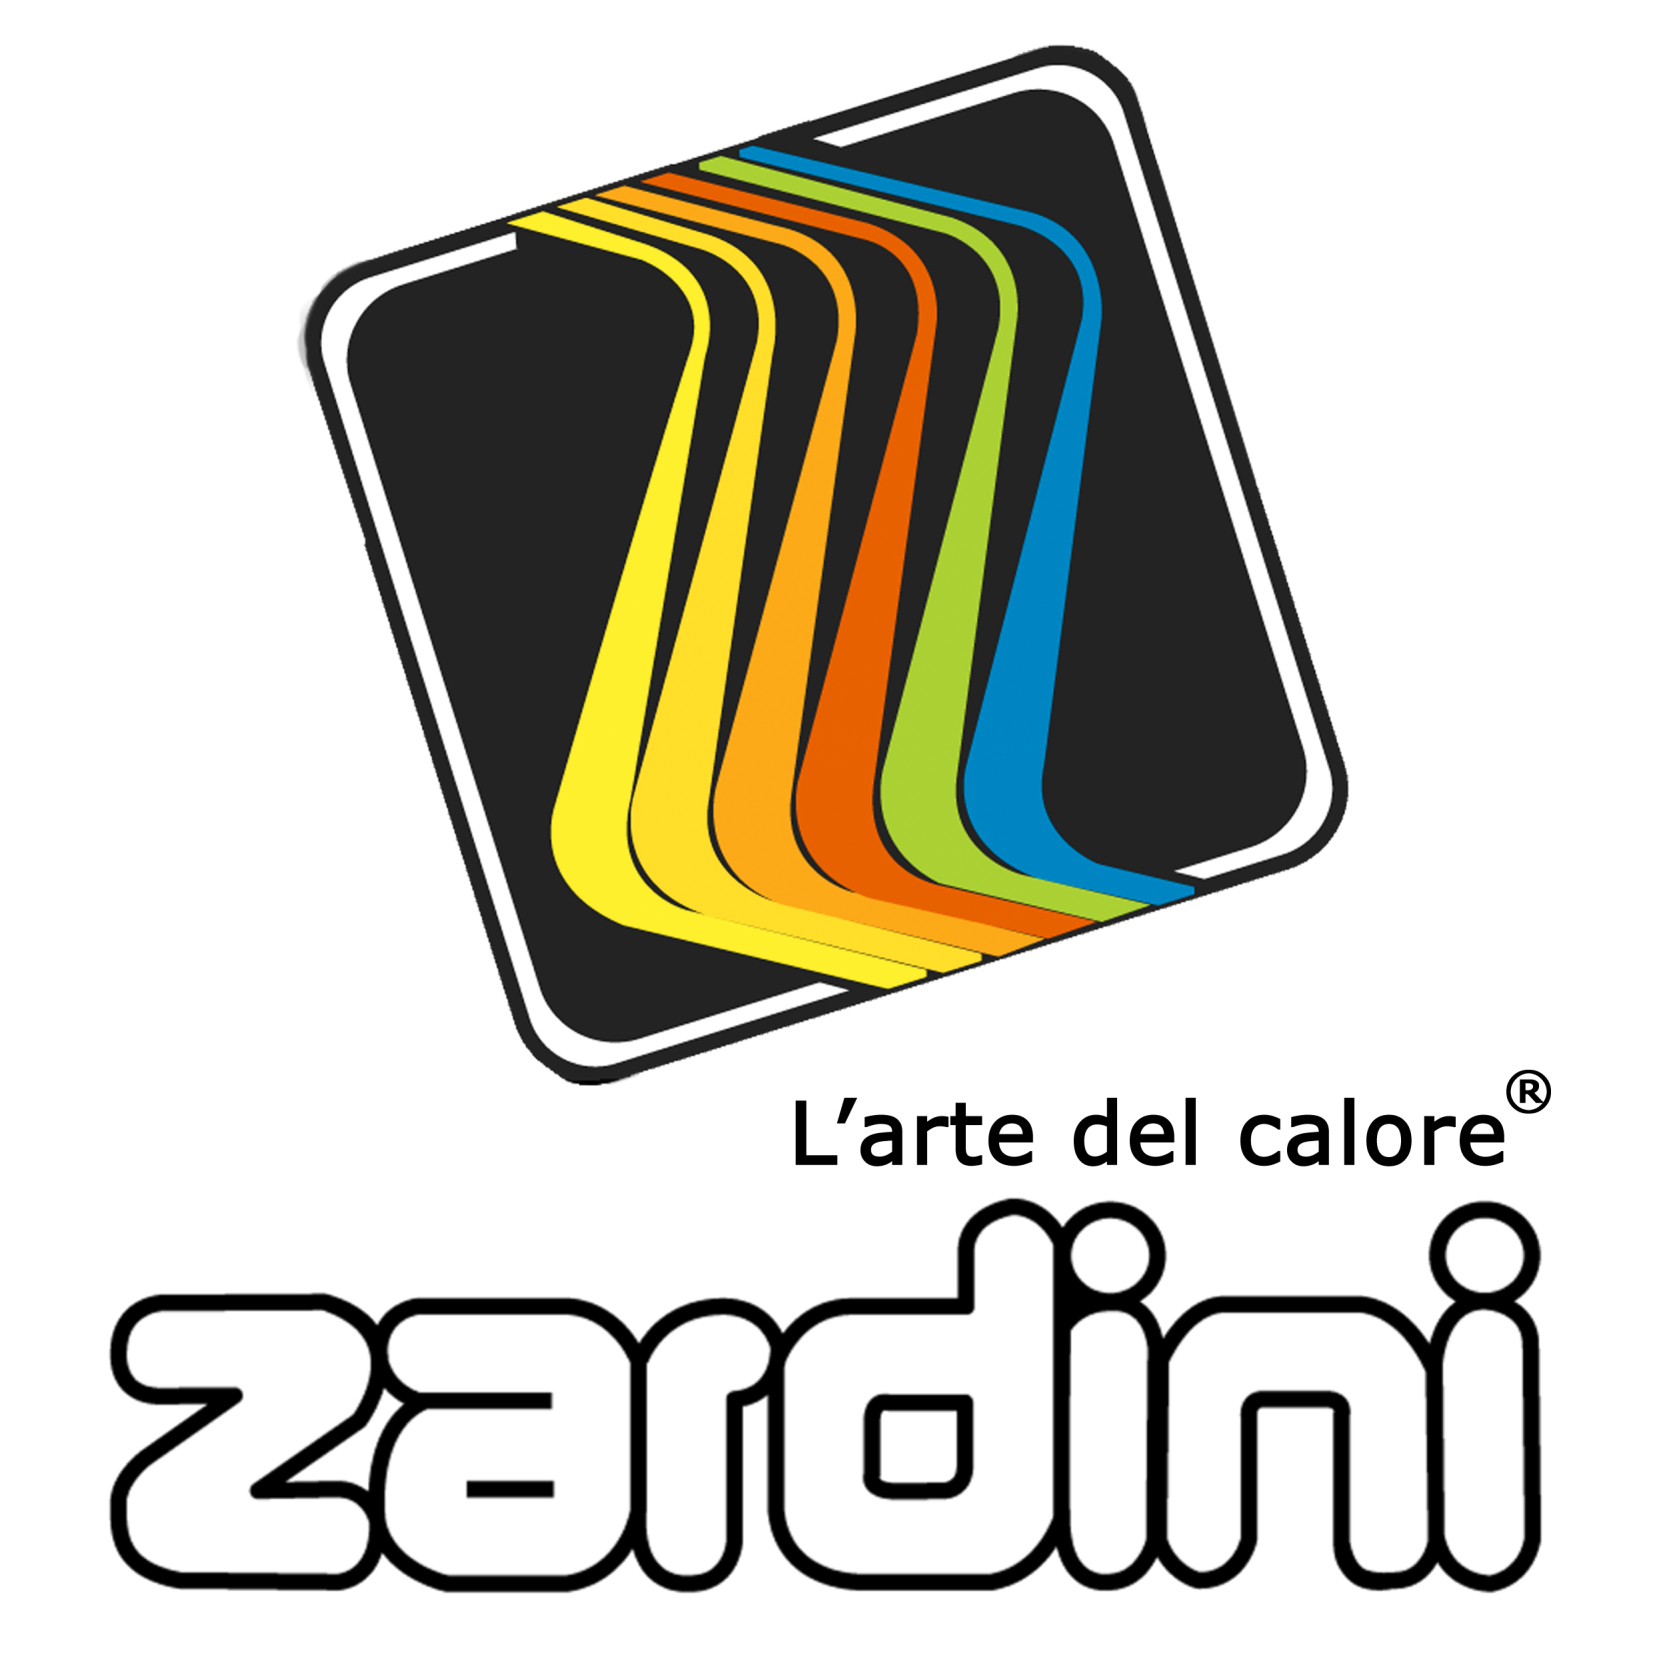 Zardini